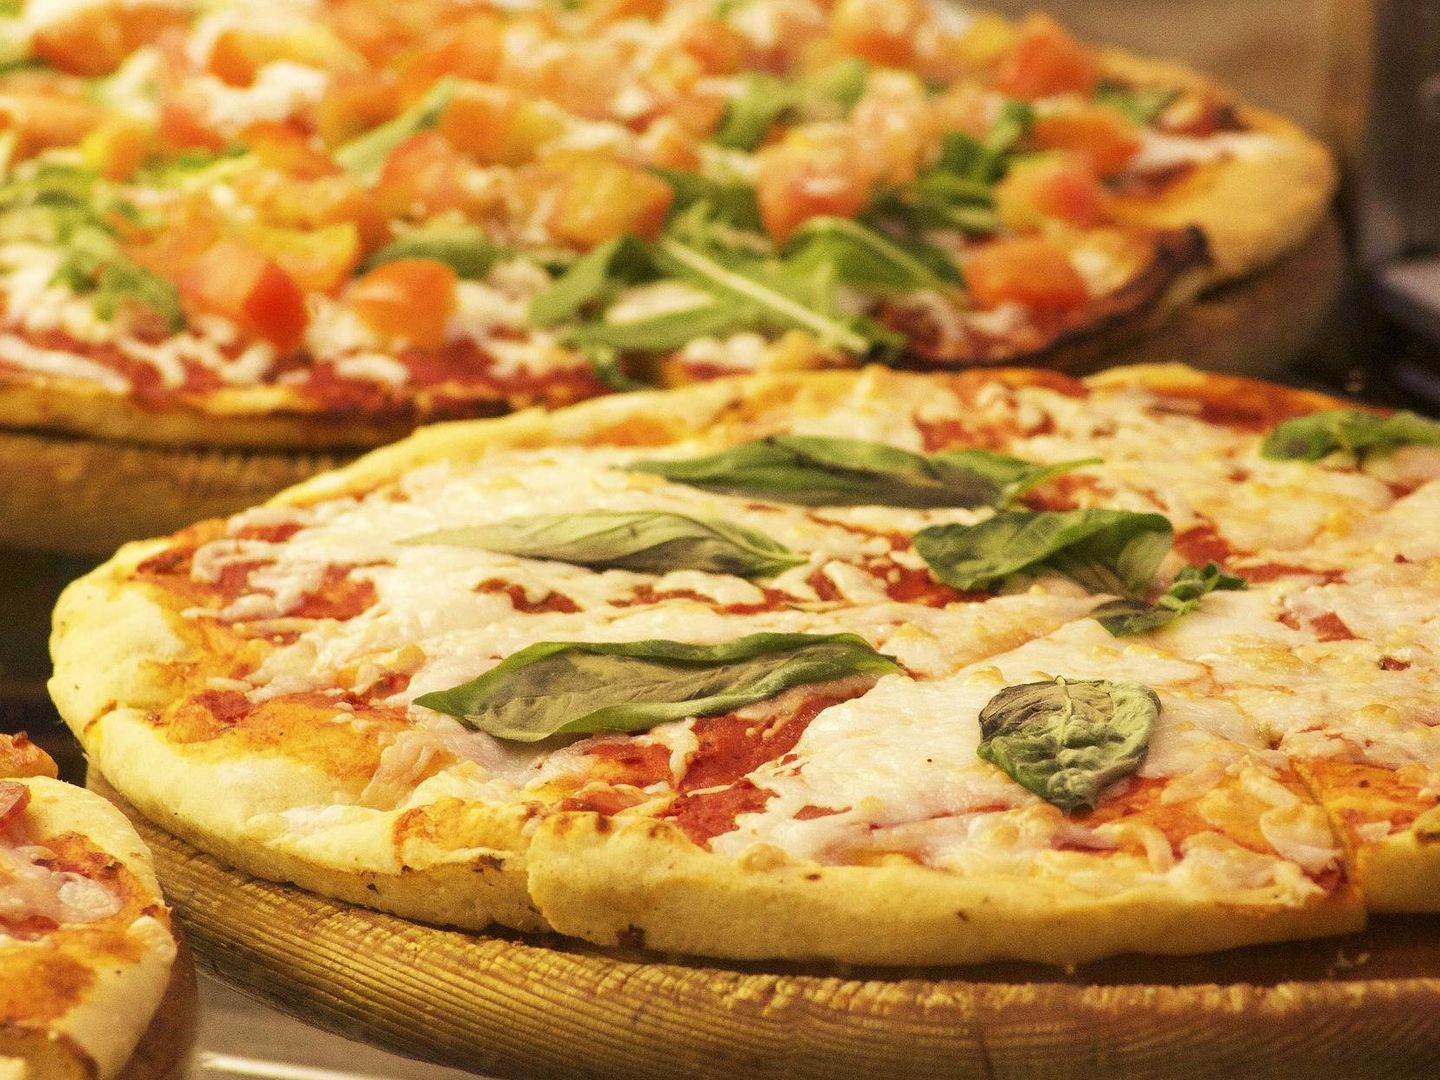 Si la pizza contiene queso, genera más adicción.